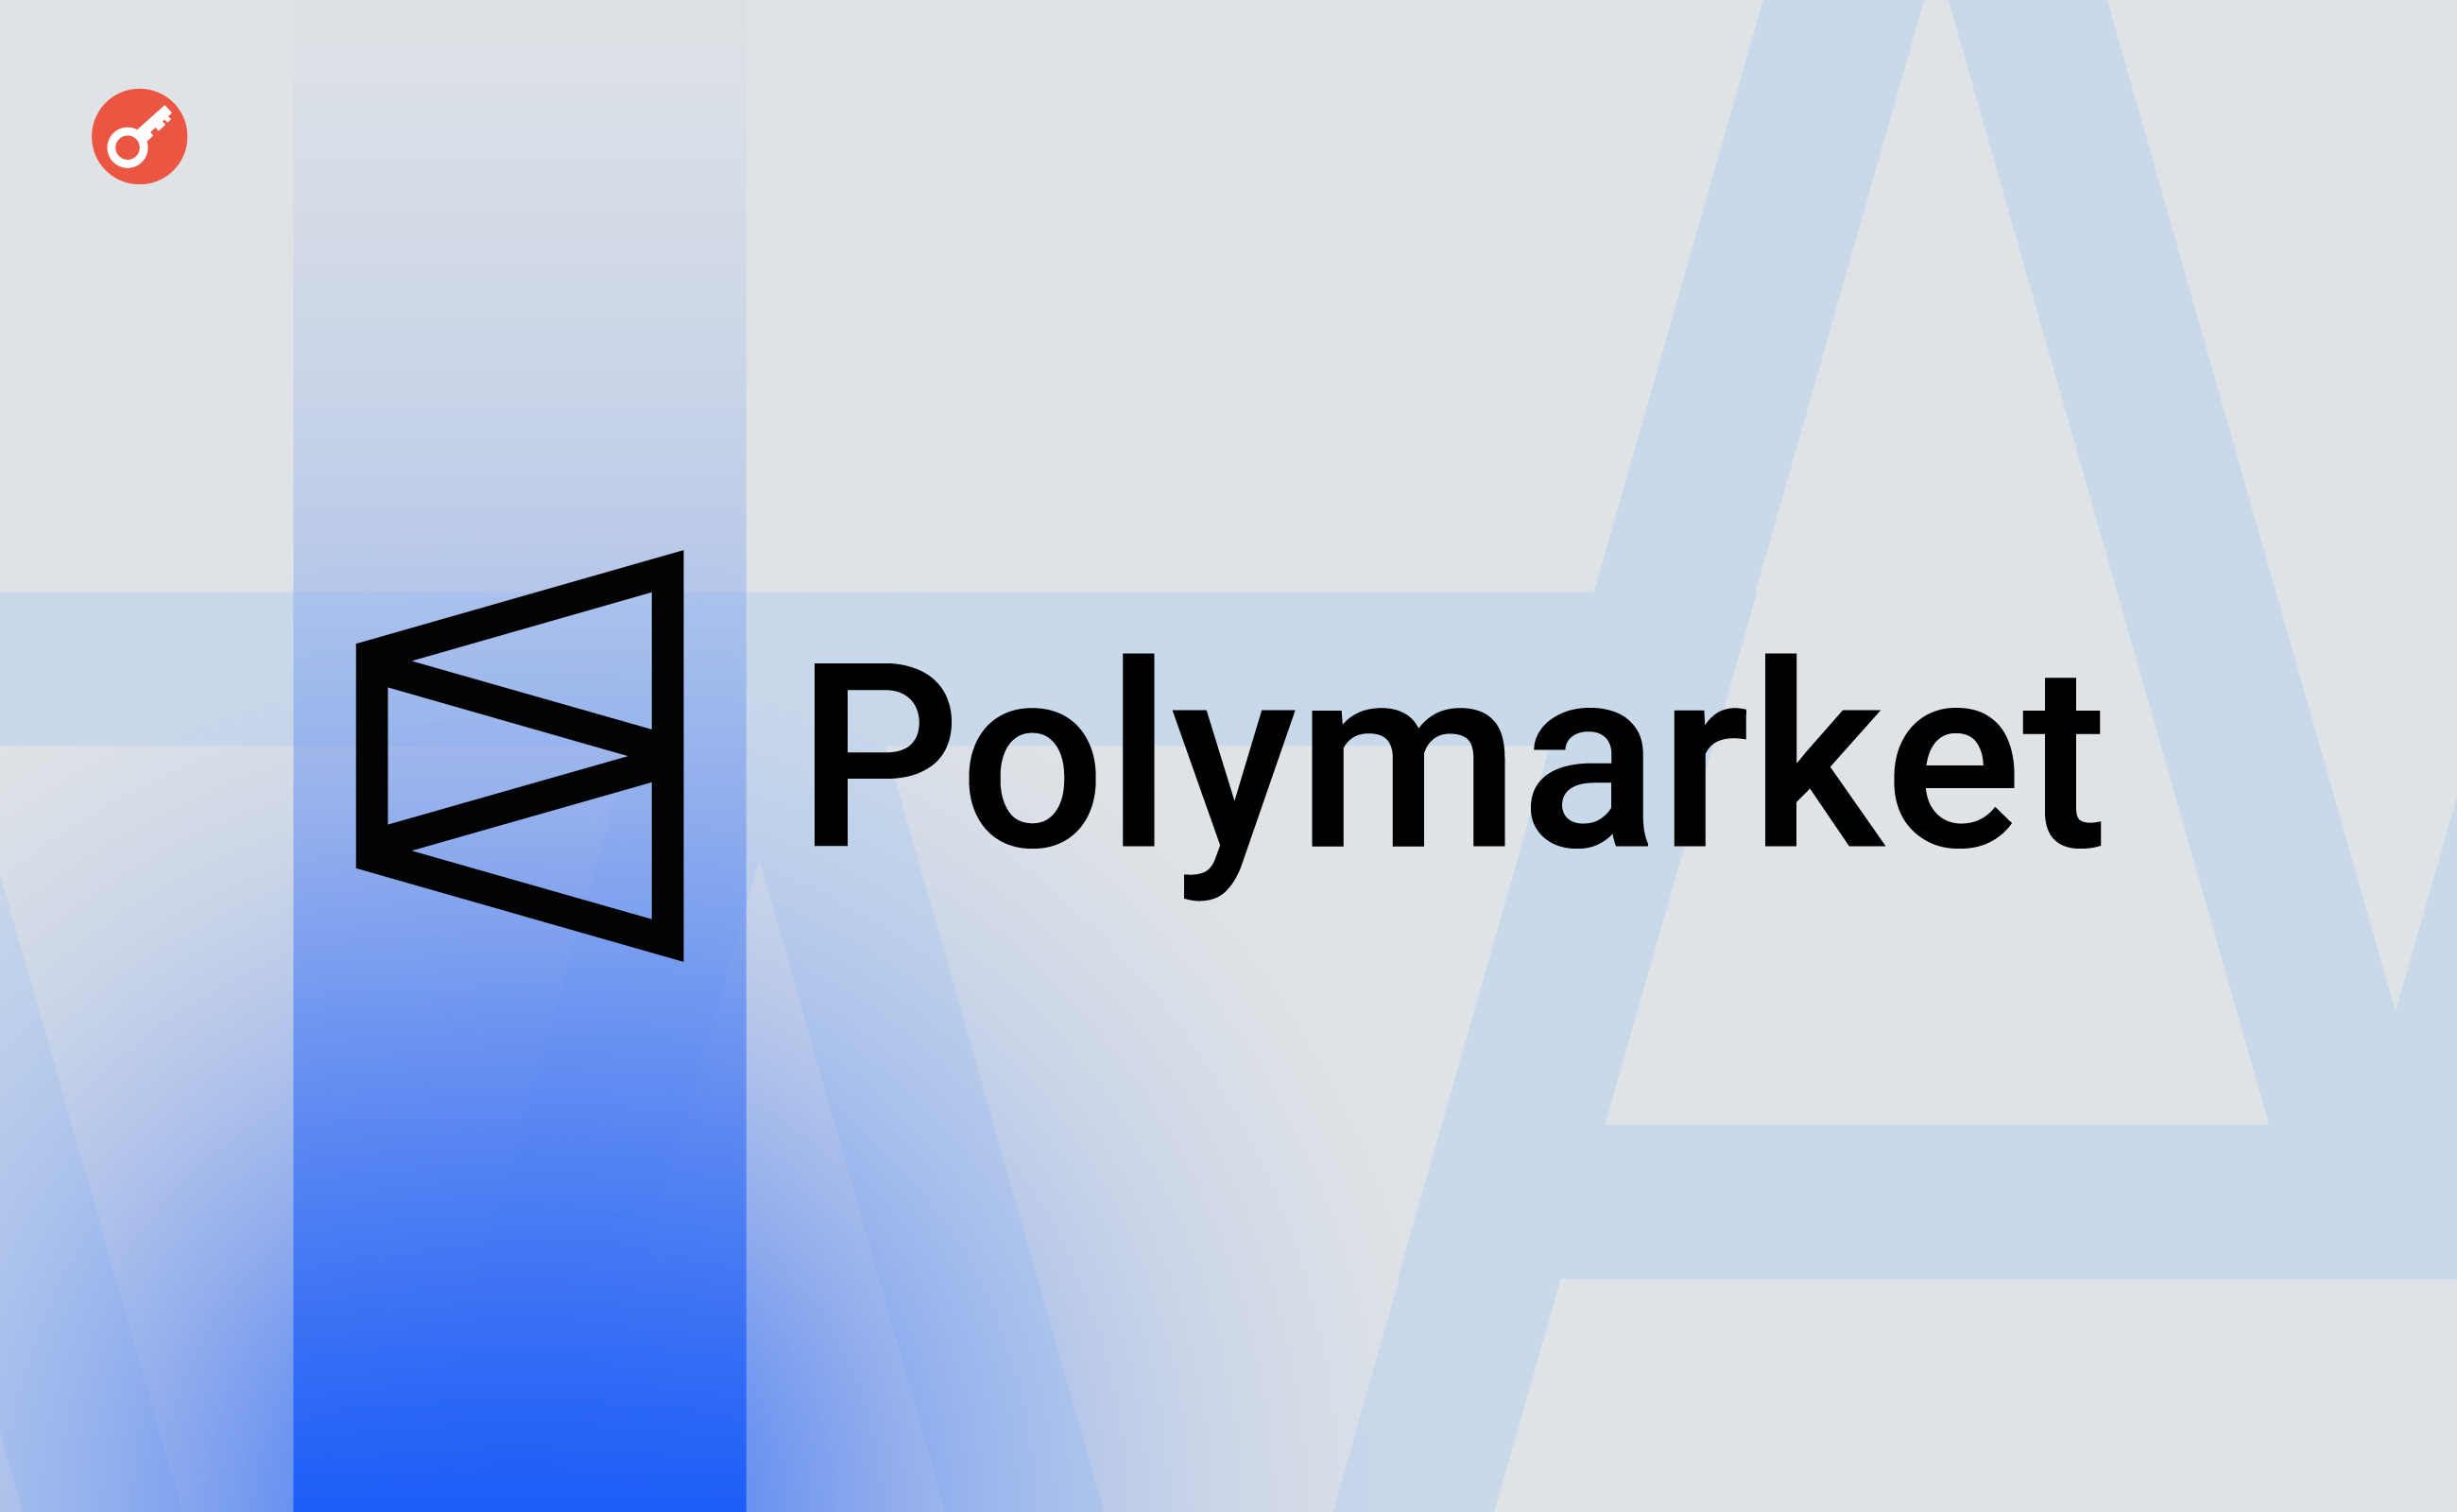 Объем торгов на платформе Polymarket обновил исторический максимум. Заглавный коллаж новости.